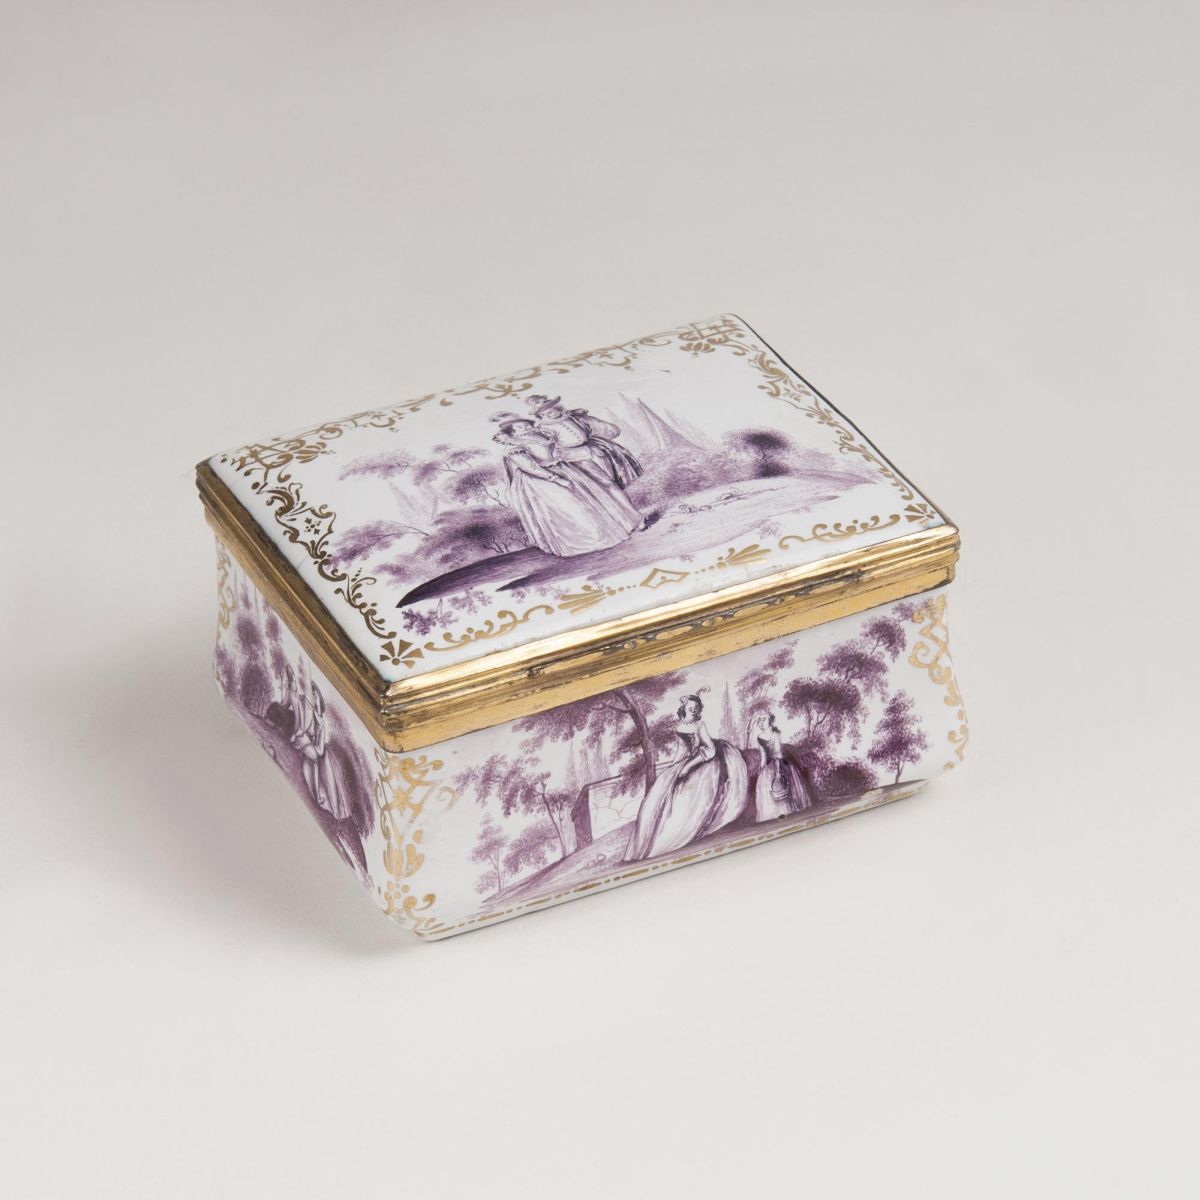 An Enamel Snuff Box with Watteau Scenes in Purple Monochrome